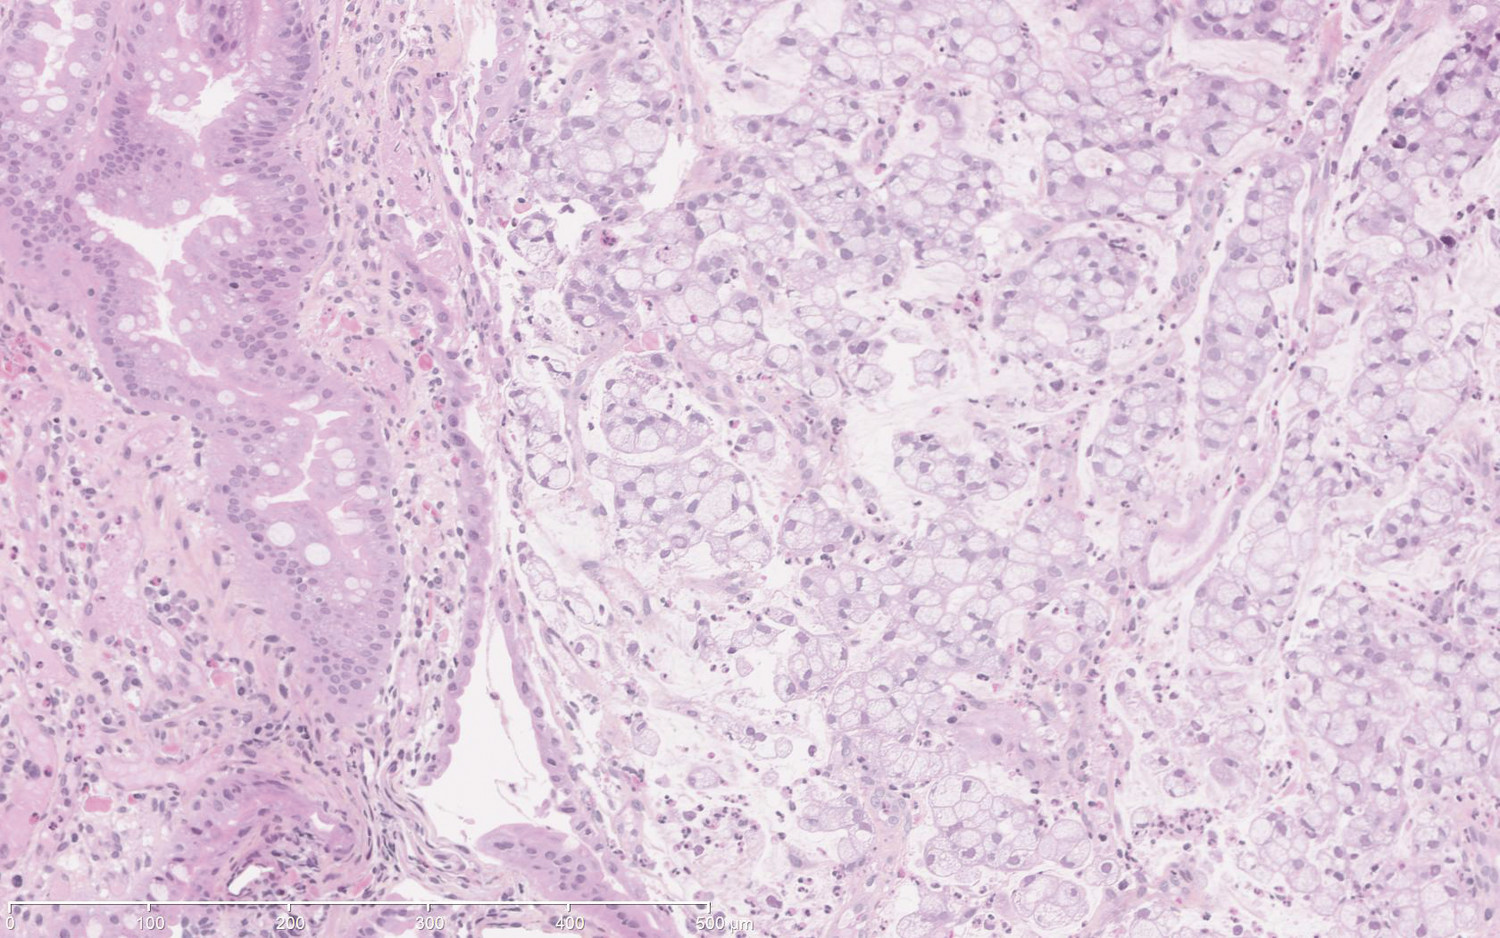 Sténose bulbaire chez une patiente atteinte de maladie de Crohn pédiatrique - Figure 3